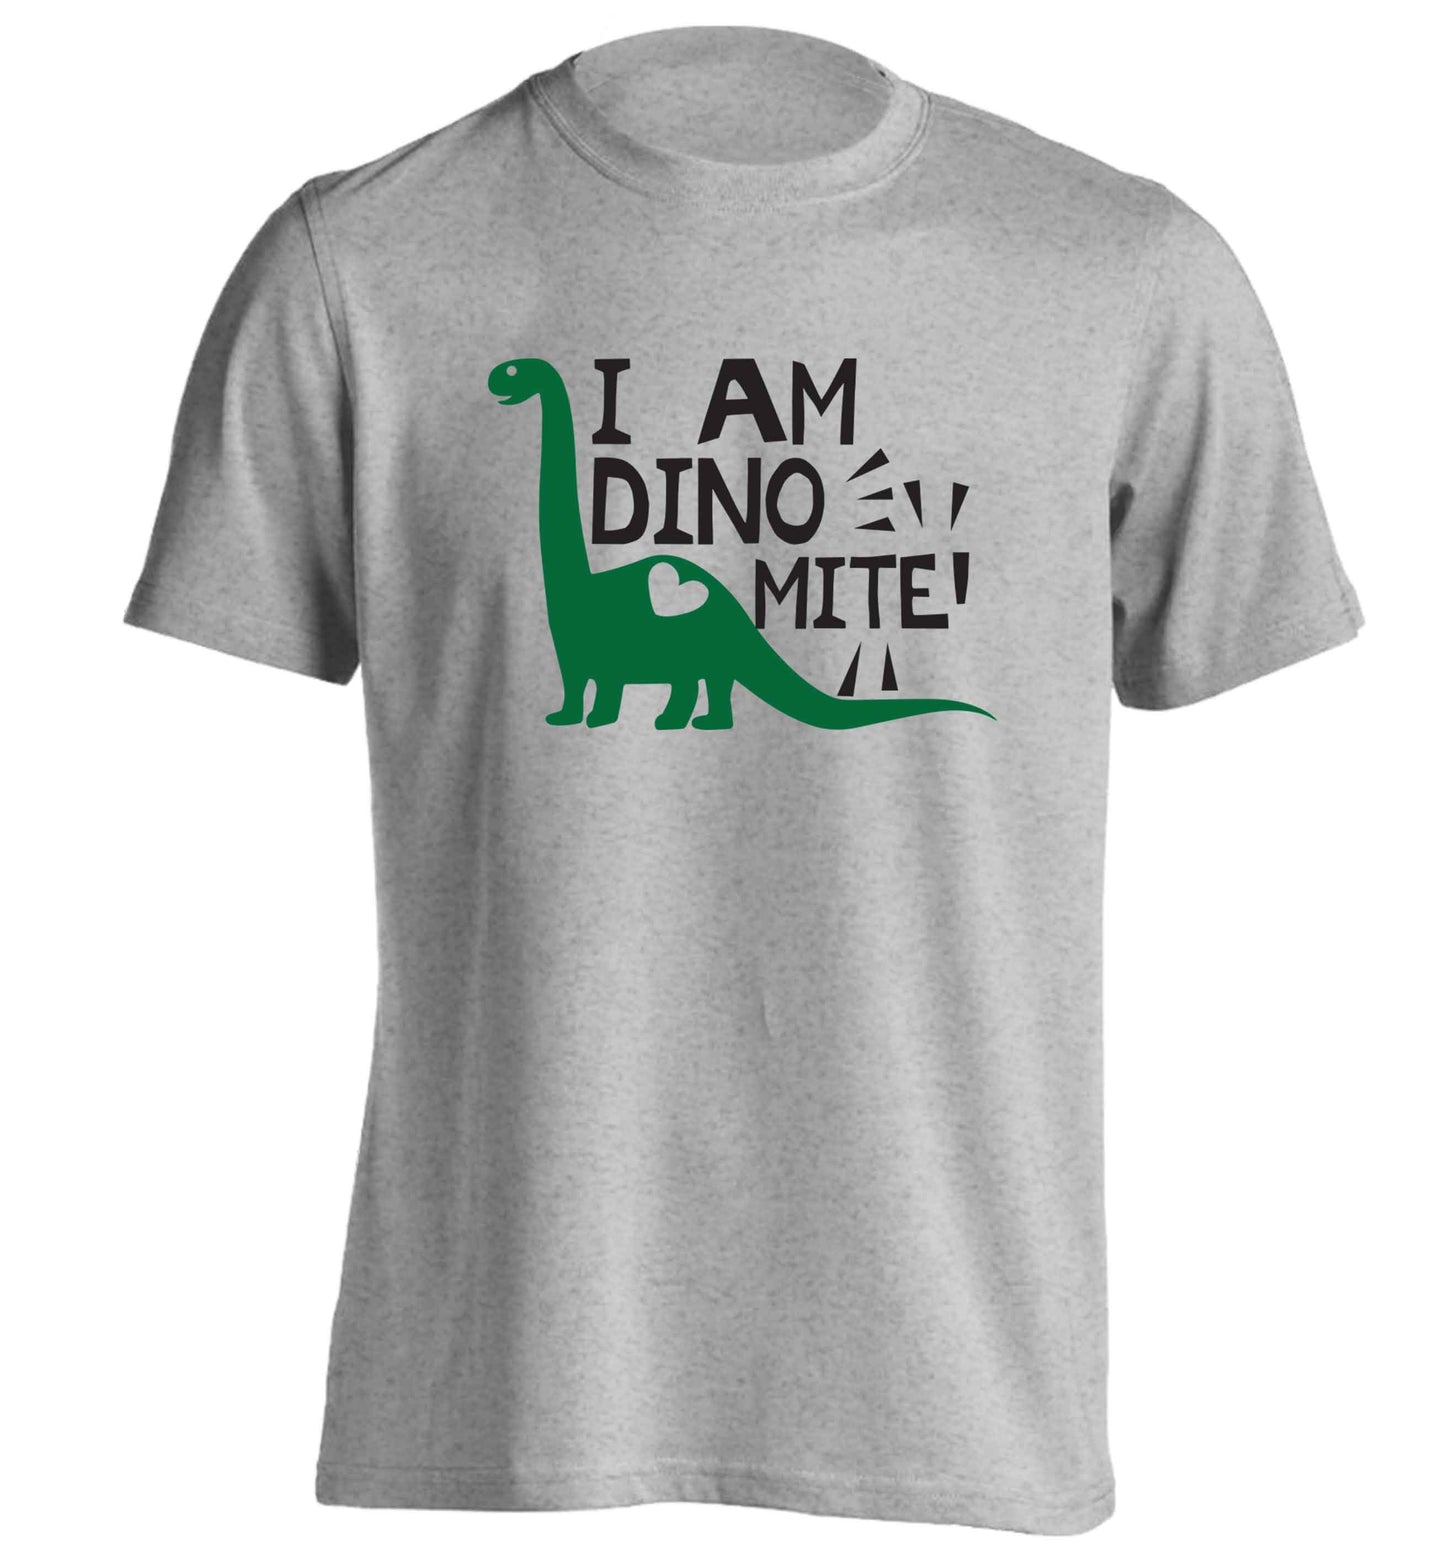 I am dinomite! adults unisex grey Tshirt 2XL